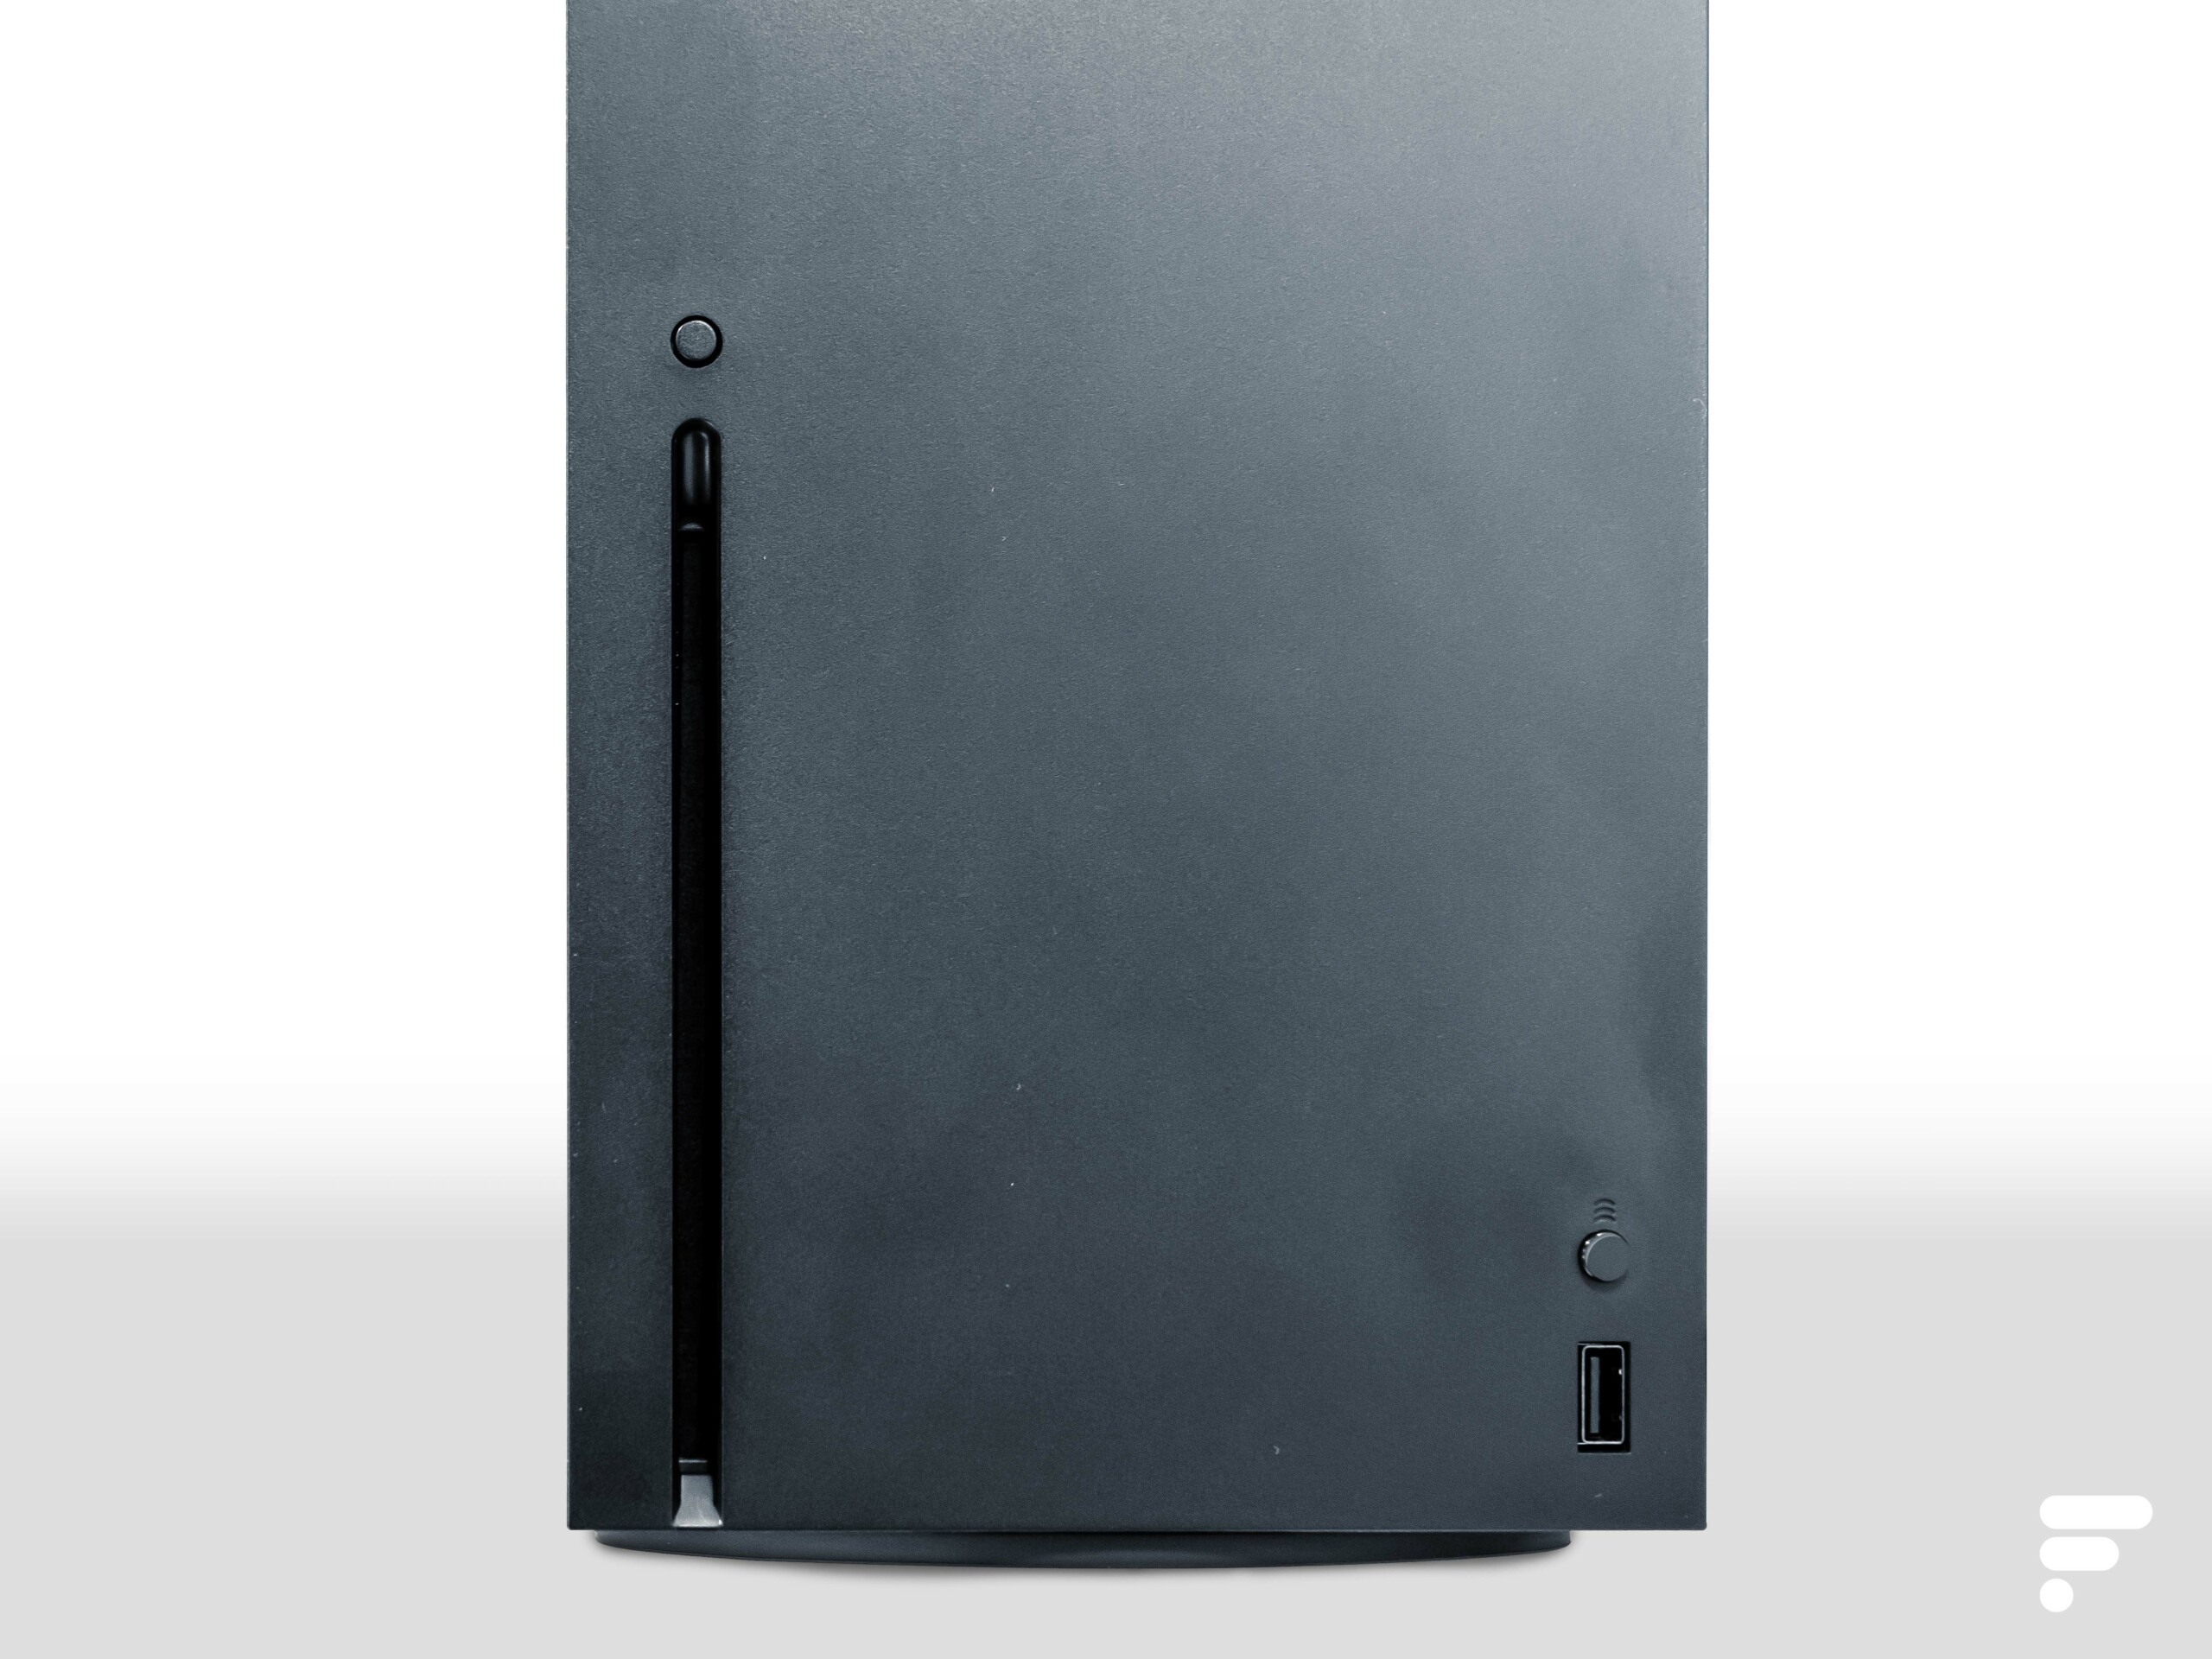 Xbox Series X : des précisions sur le SSD et sa capacité réelle